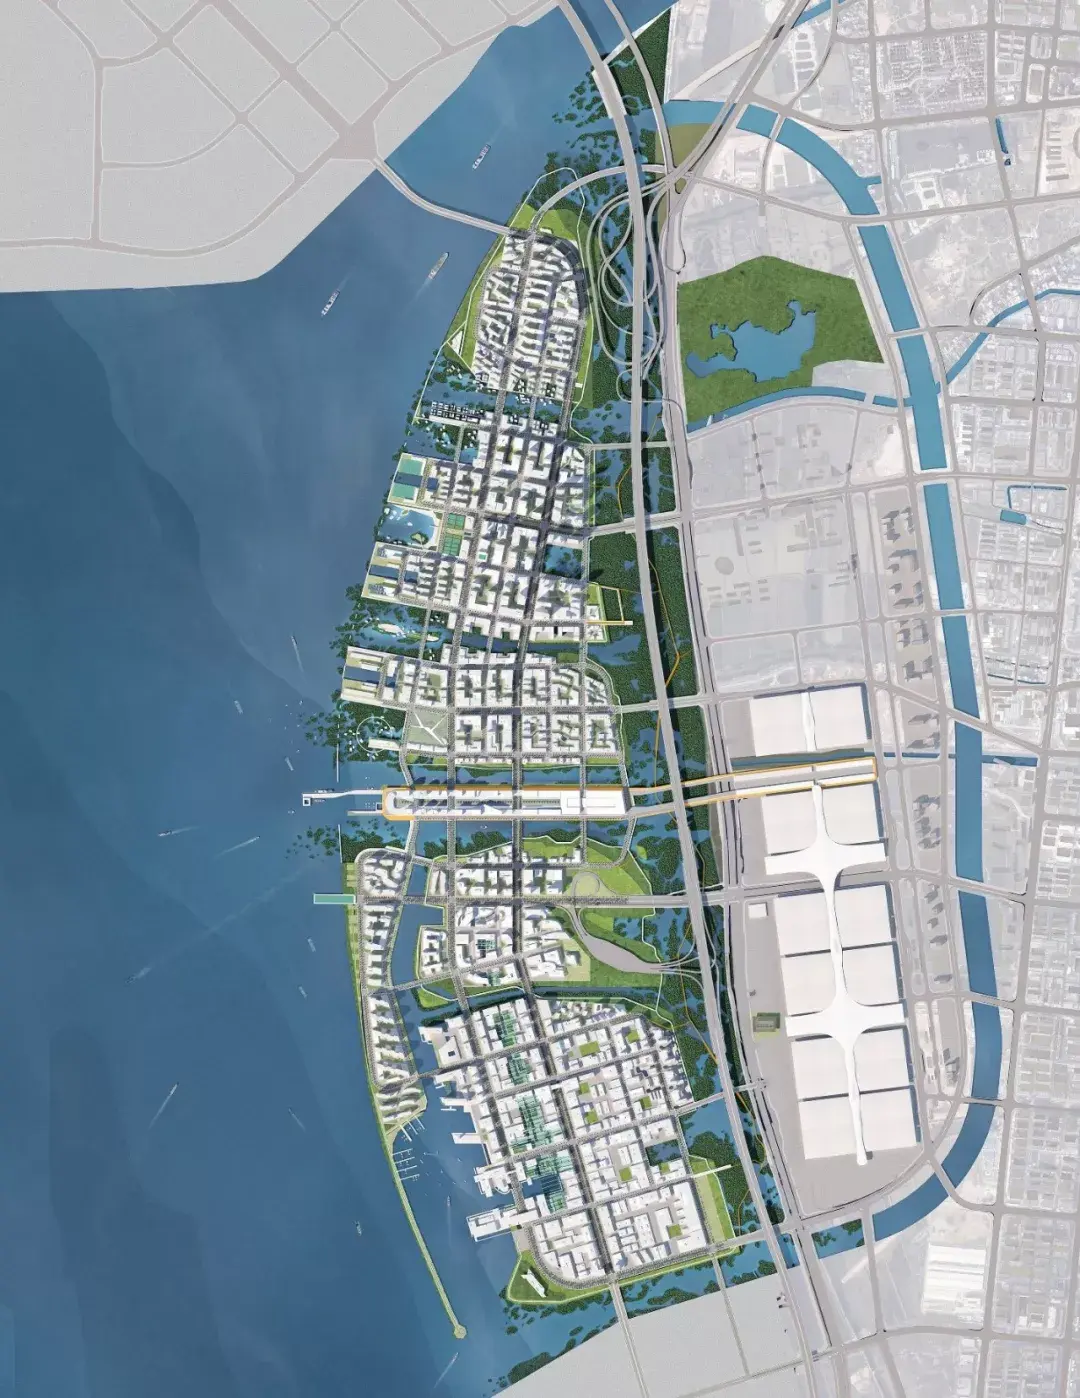 深圳海洋新城城市设计国际竞赛方案:蓝海城岸,红树归来08 tekuma